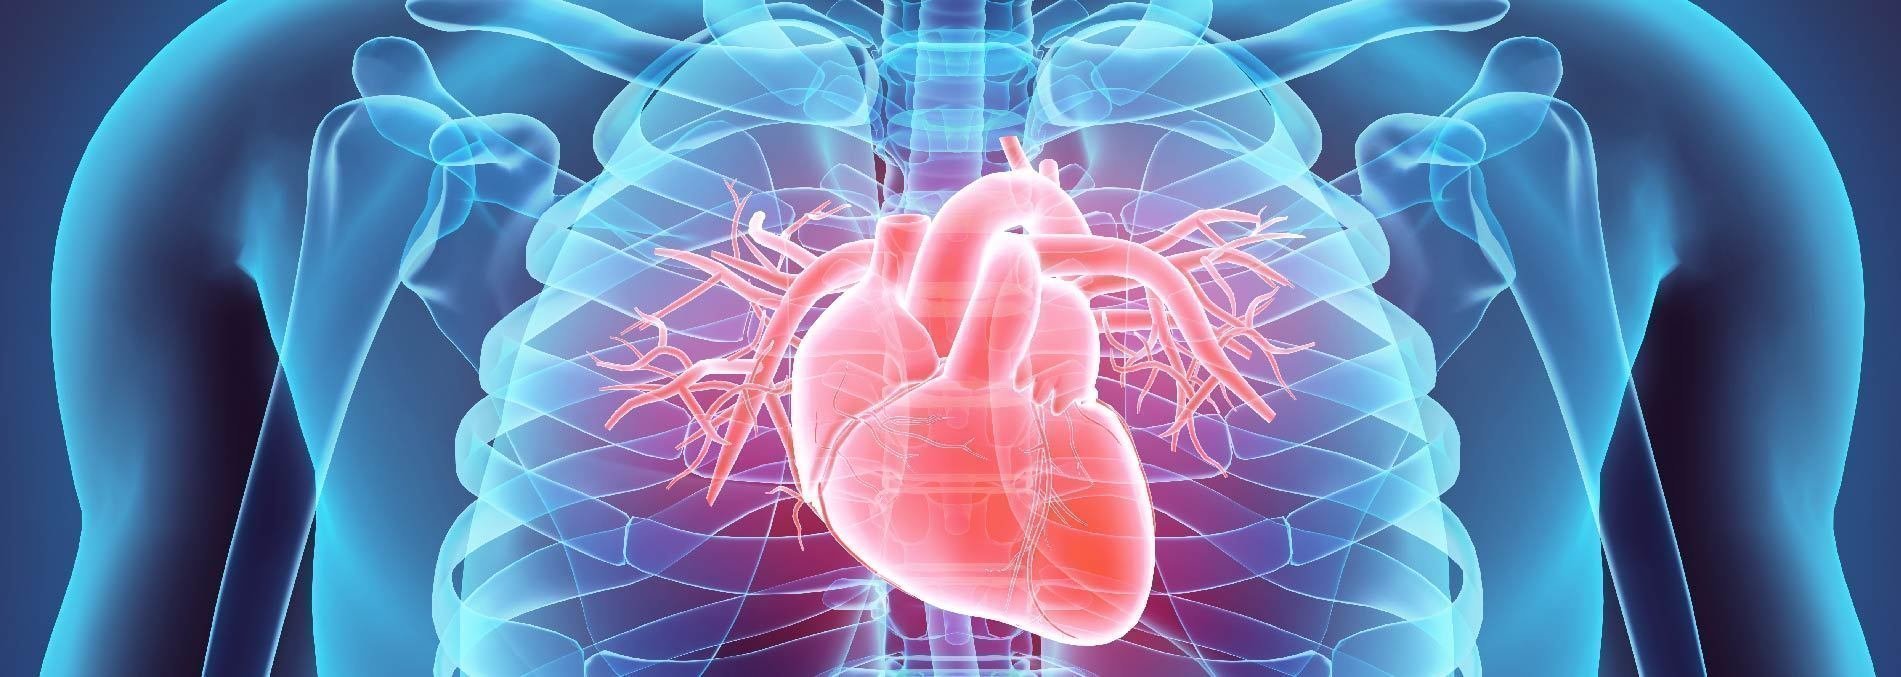 III Simposio de Enfermedades Cardiovasculares UPB - Clínica CardioVID: navegando por medio del conocimiento de las enfermedades cardiovasculares